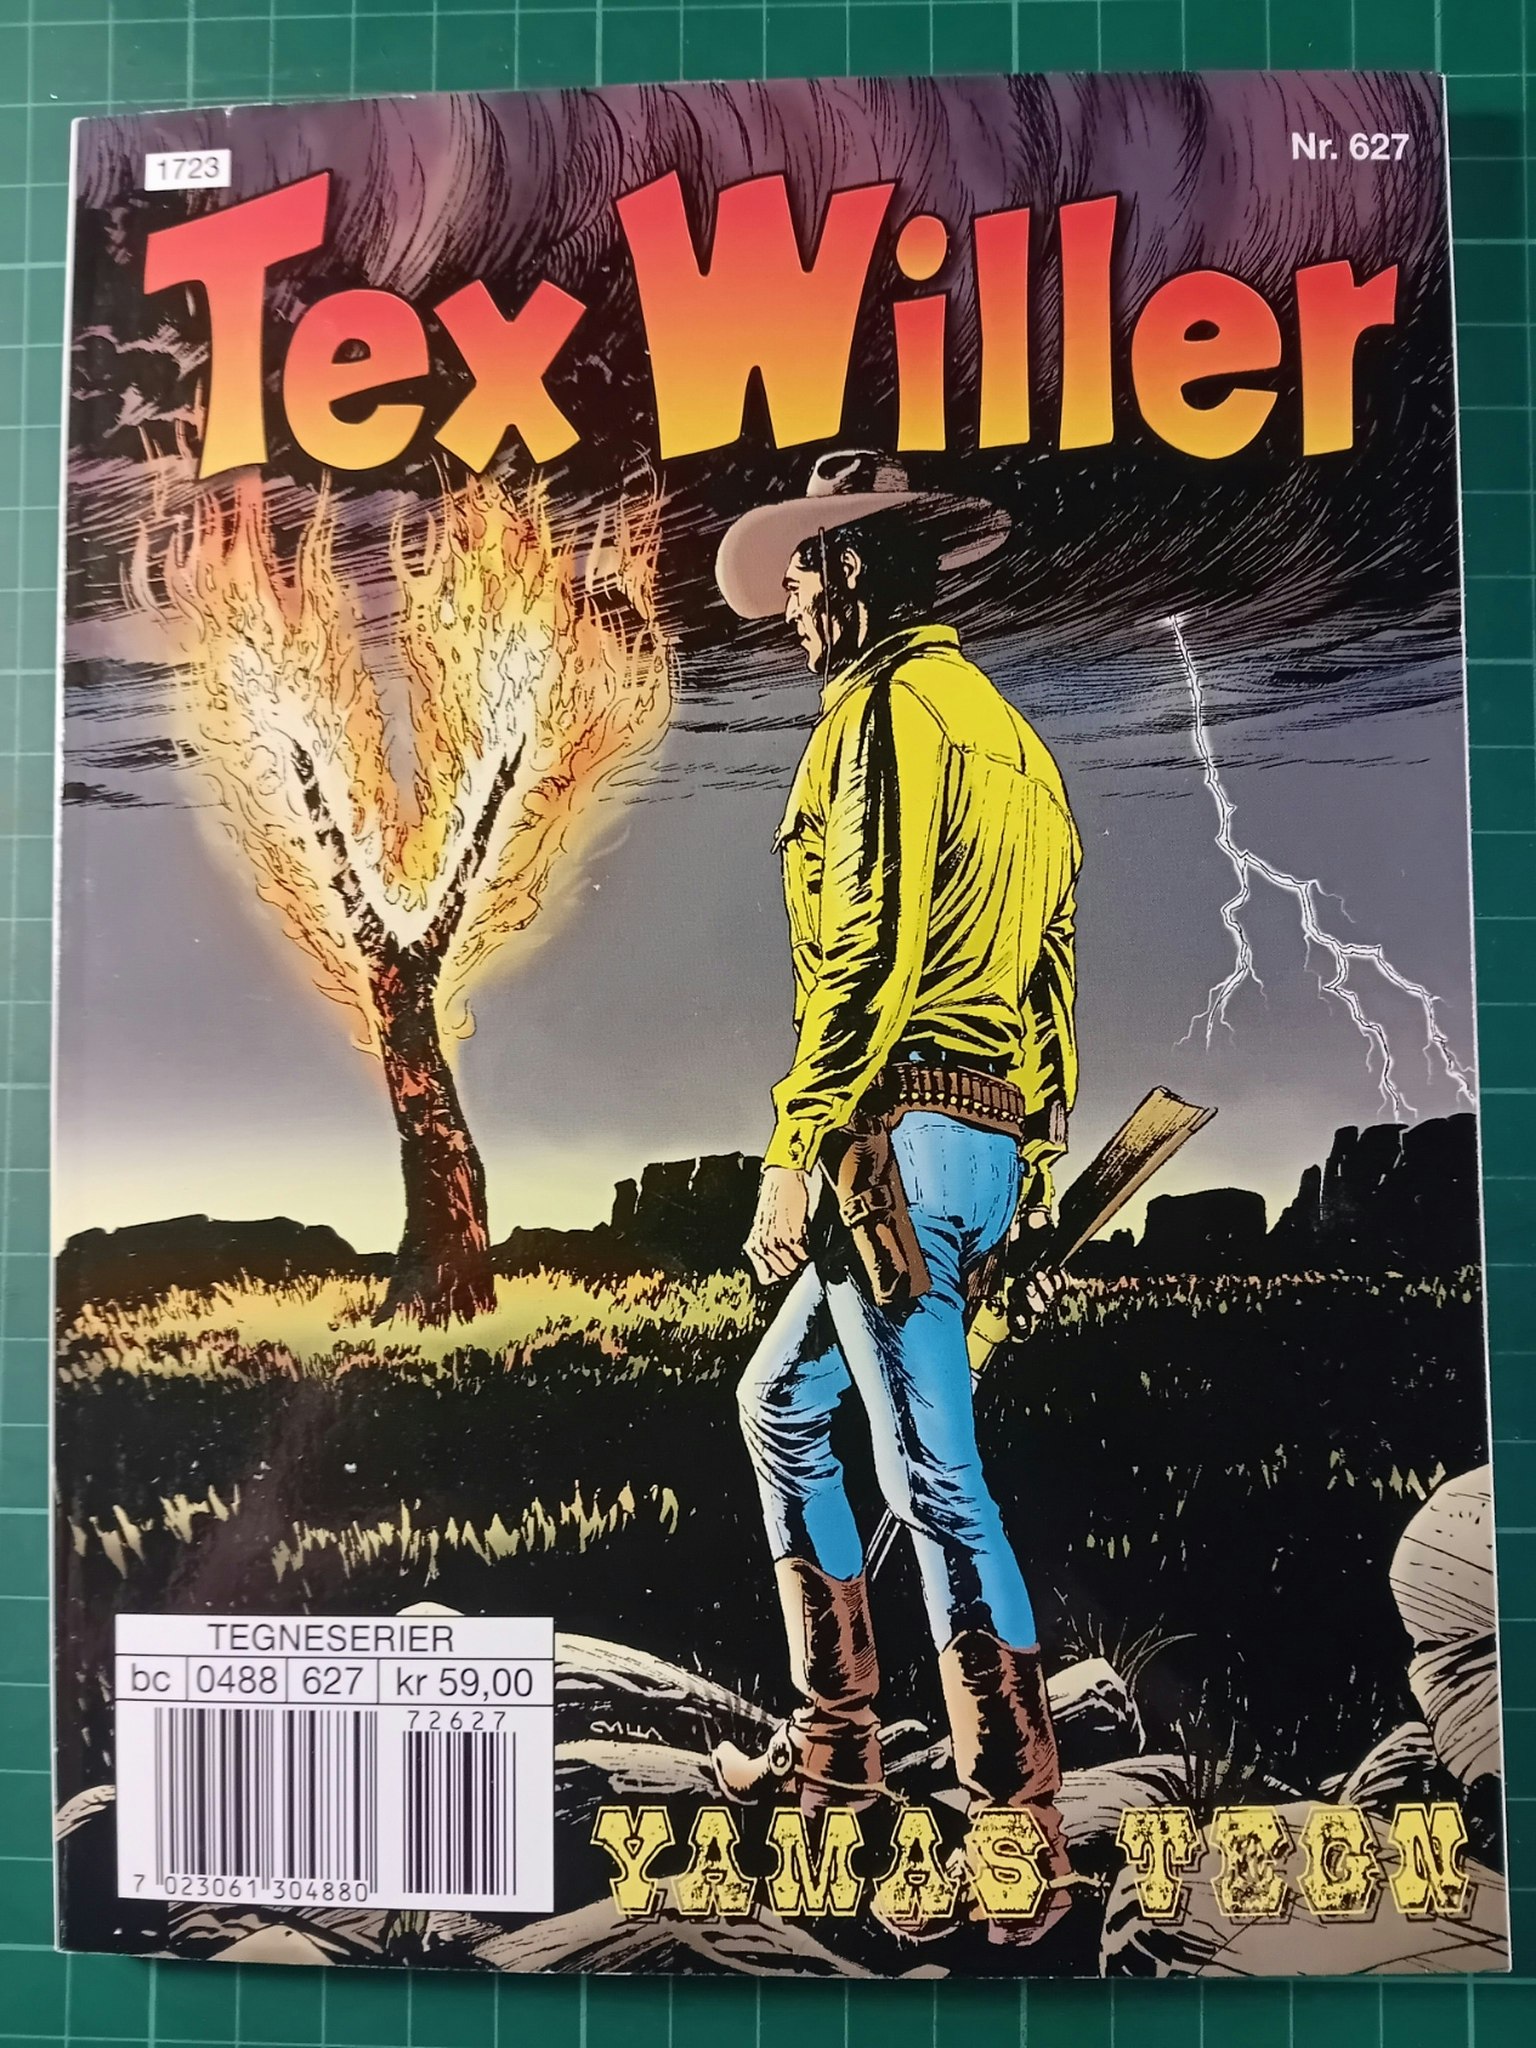 Tex Willer #627